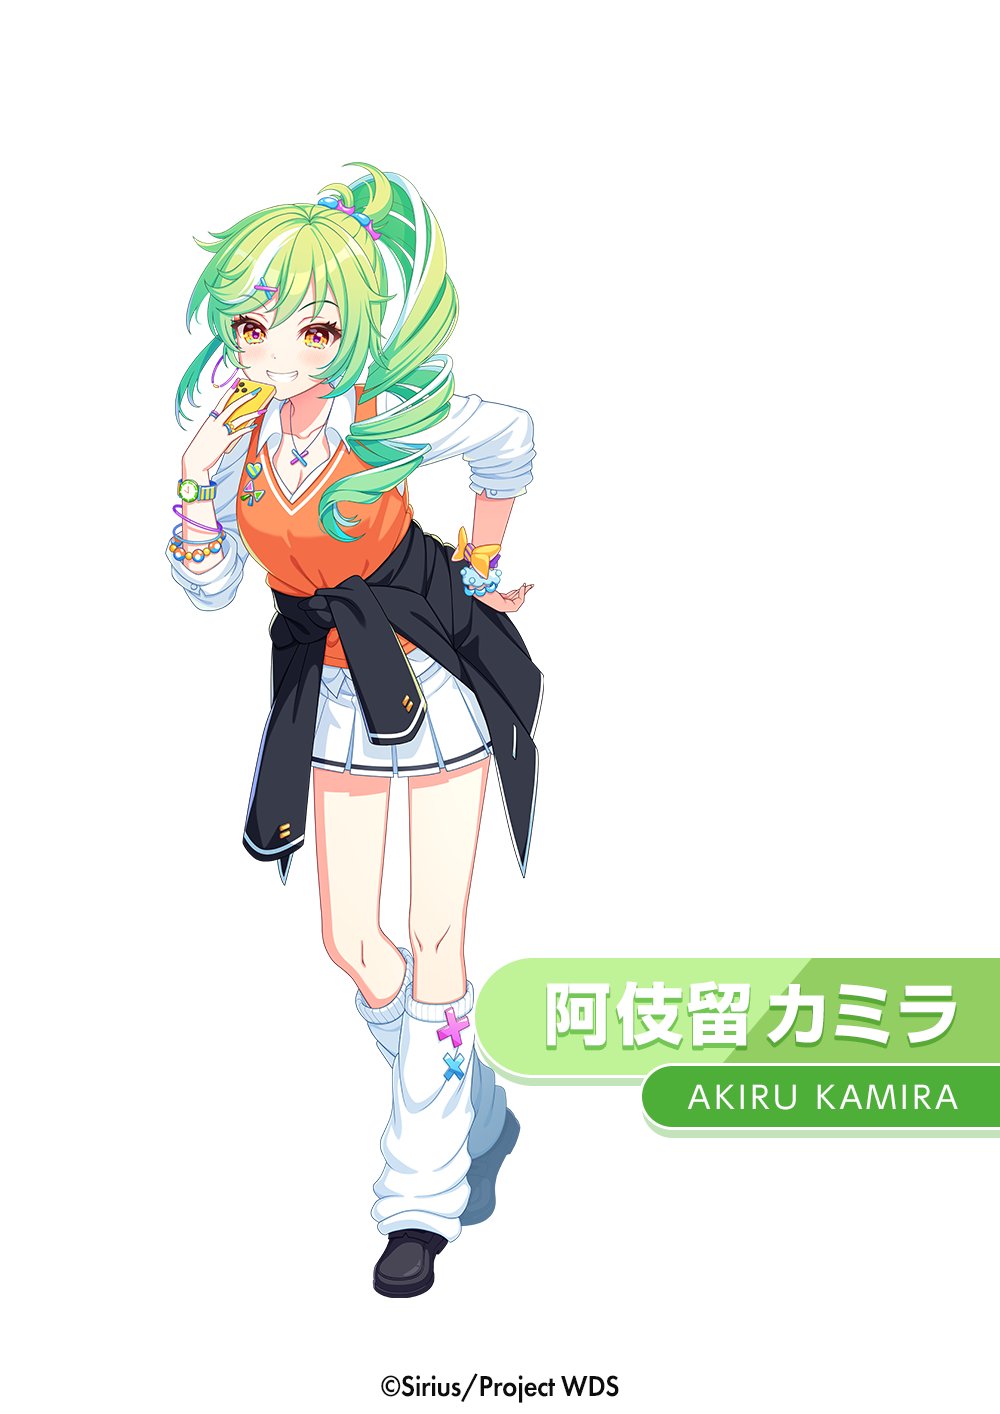 Kamira Akiru | World Dai Star Wiki | Fandom